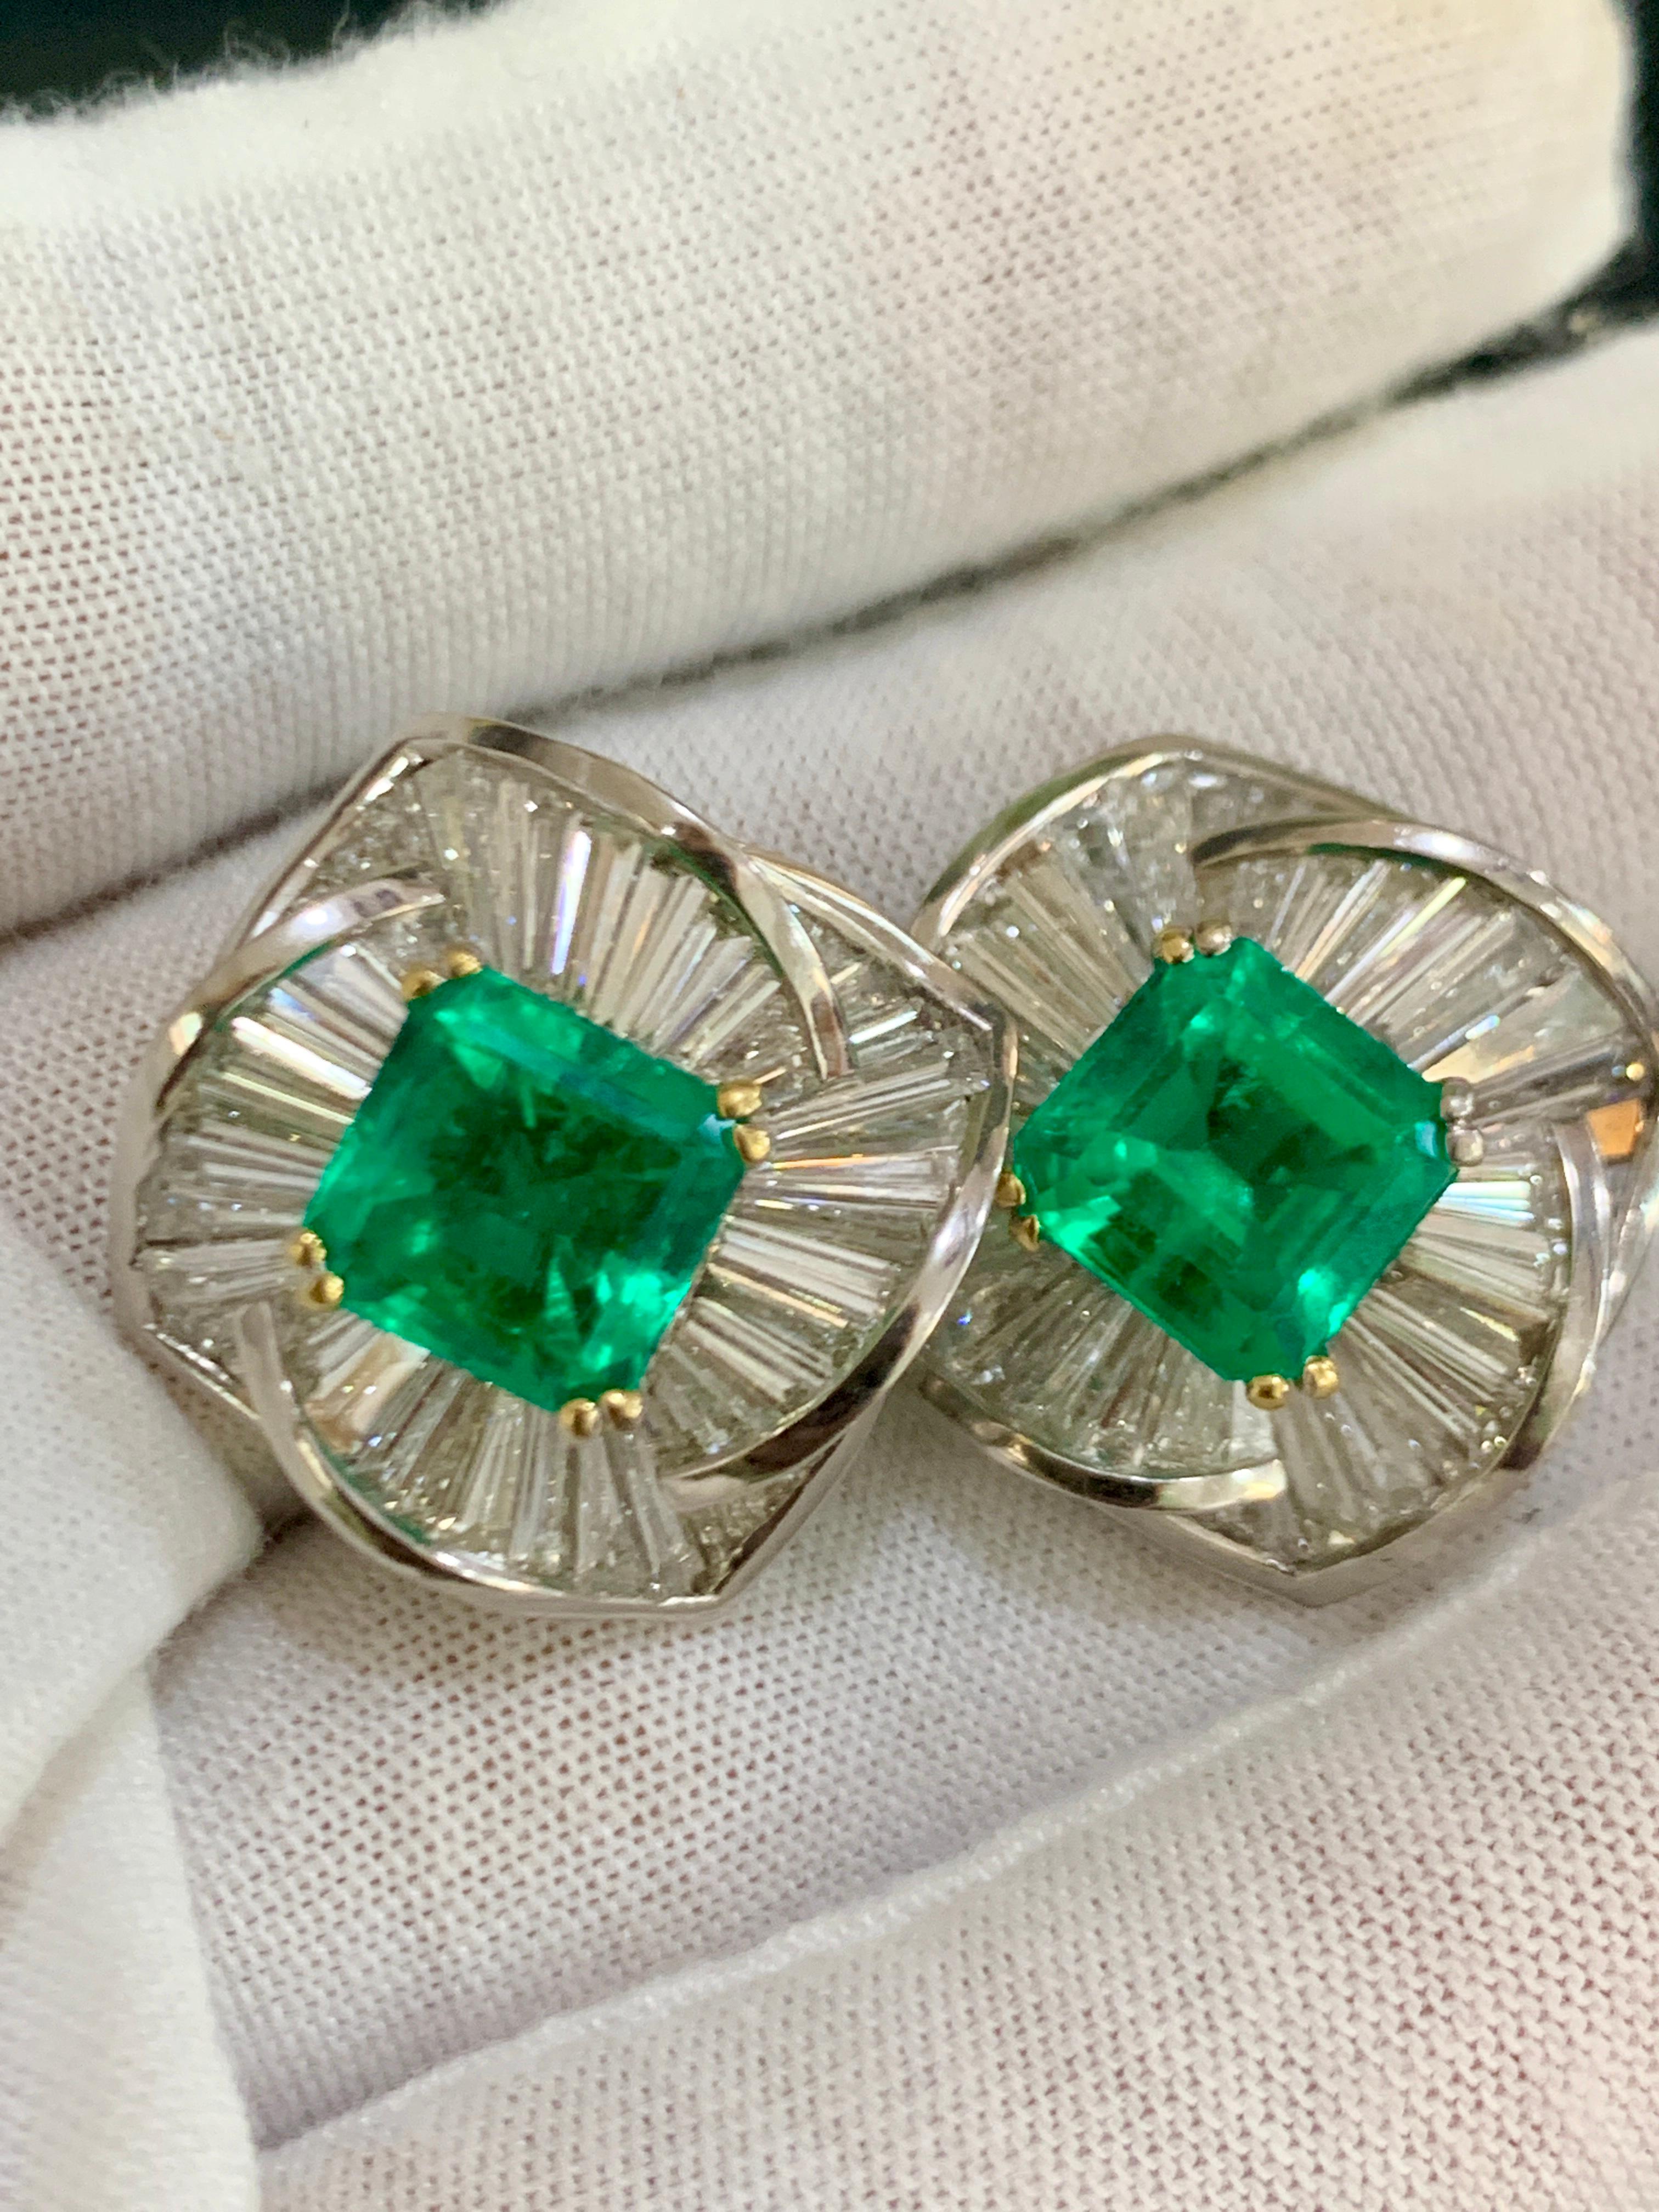 AGL Certified Minor 4ct Emerald Cut Colombian Emerald Diamond Earrings 18k Gold For Sale 5